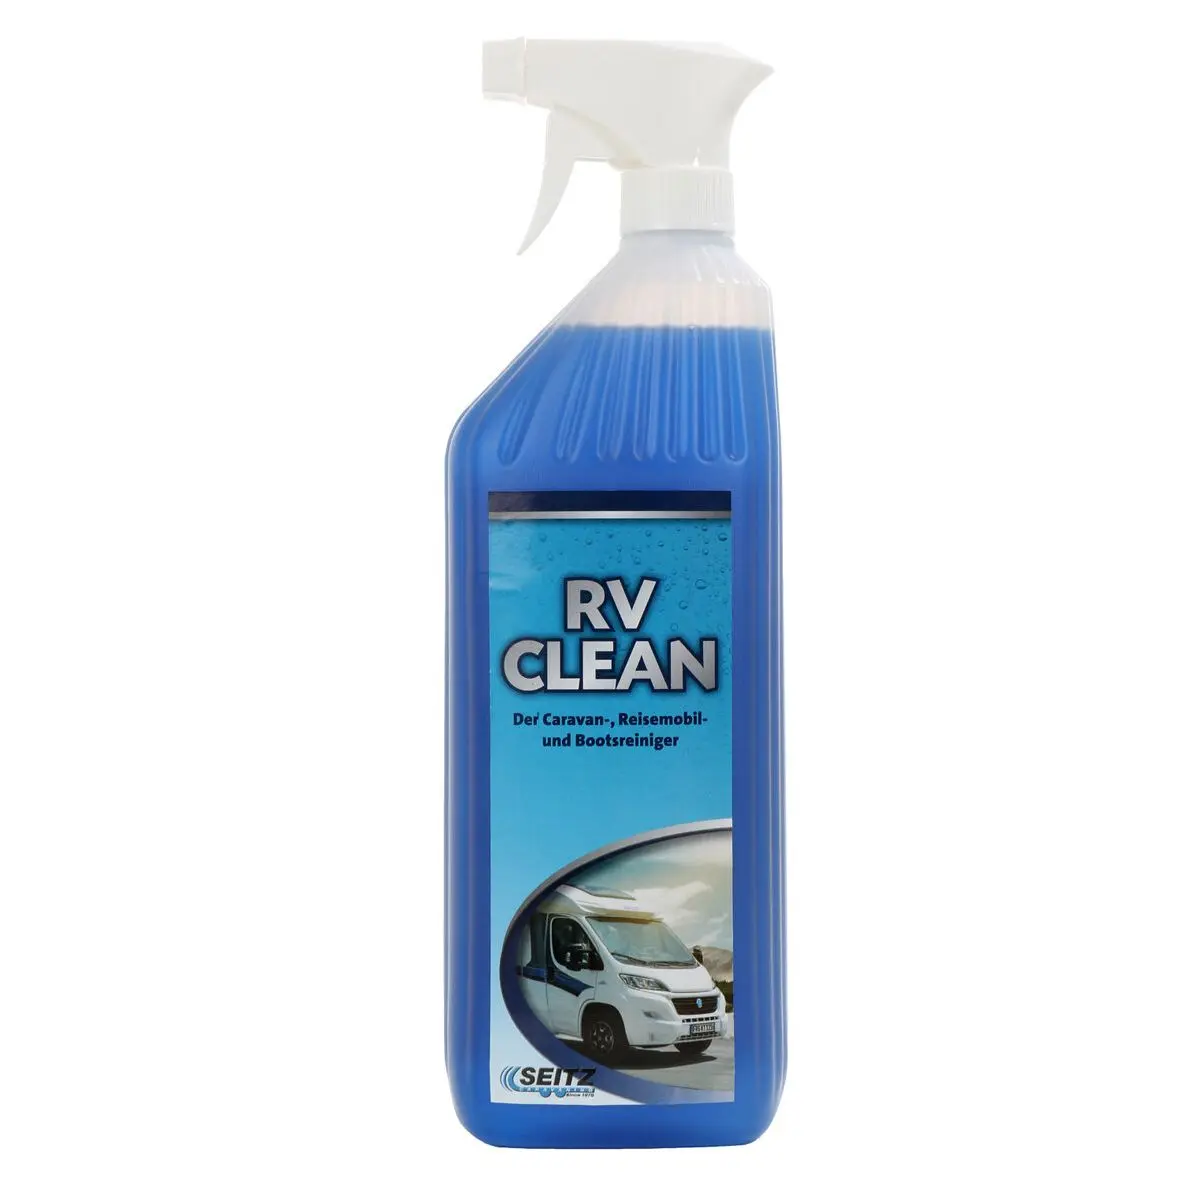 Detergent pentru rulote și bărci RV-Clean - 1000 ml